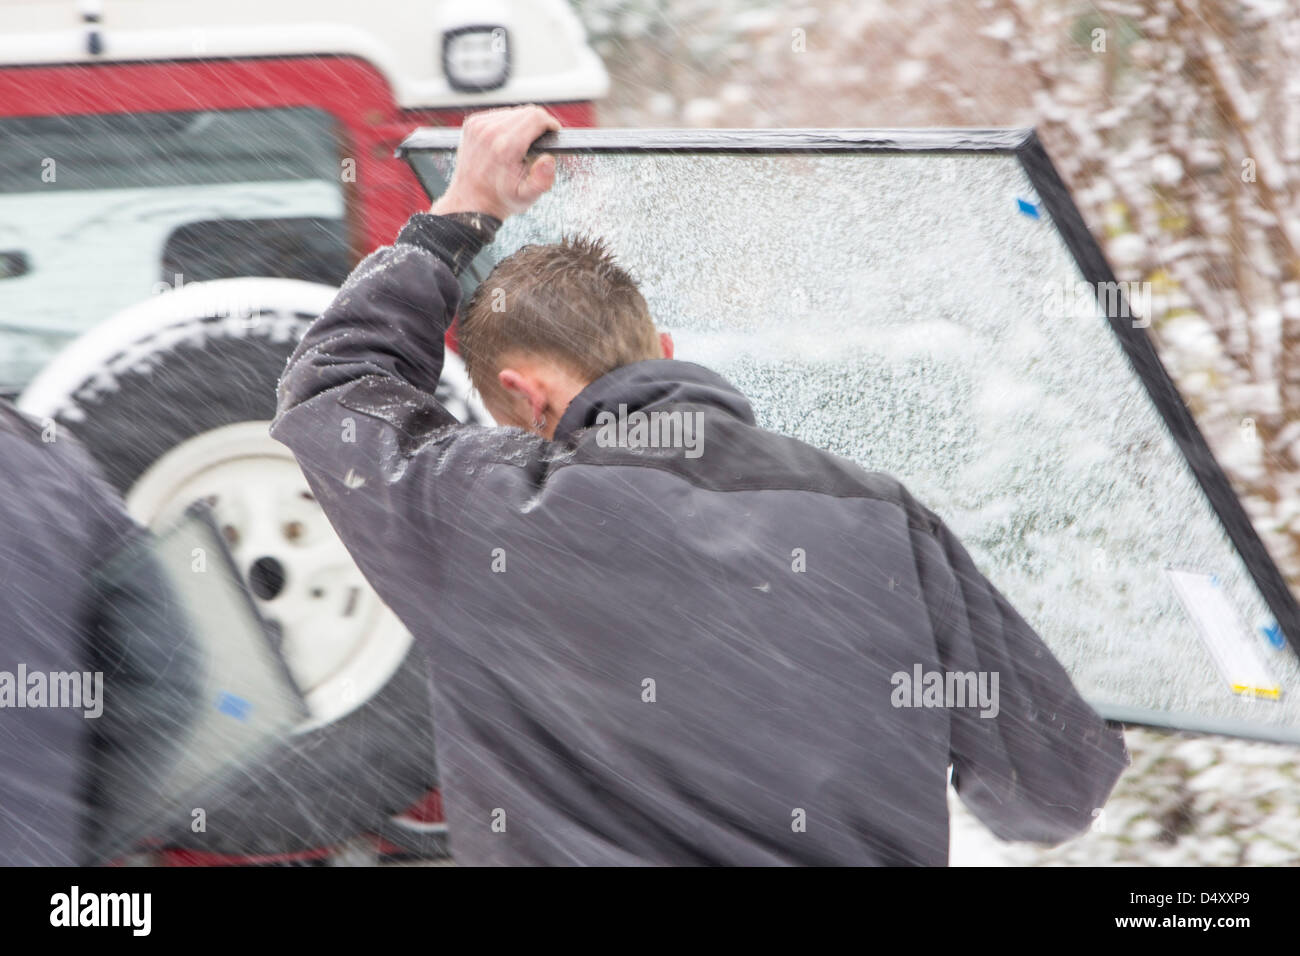 Vitriers exerçant son activité sous une sous-fenêtre dans la neige après leur van est resté coincé sur une colline raide, Ambleside, Lake District, UK. Banque D'Images